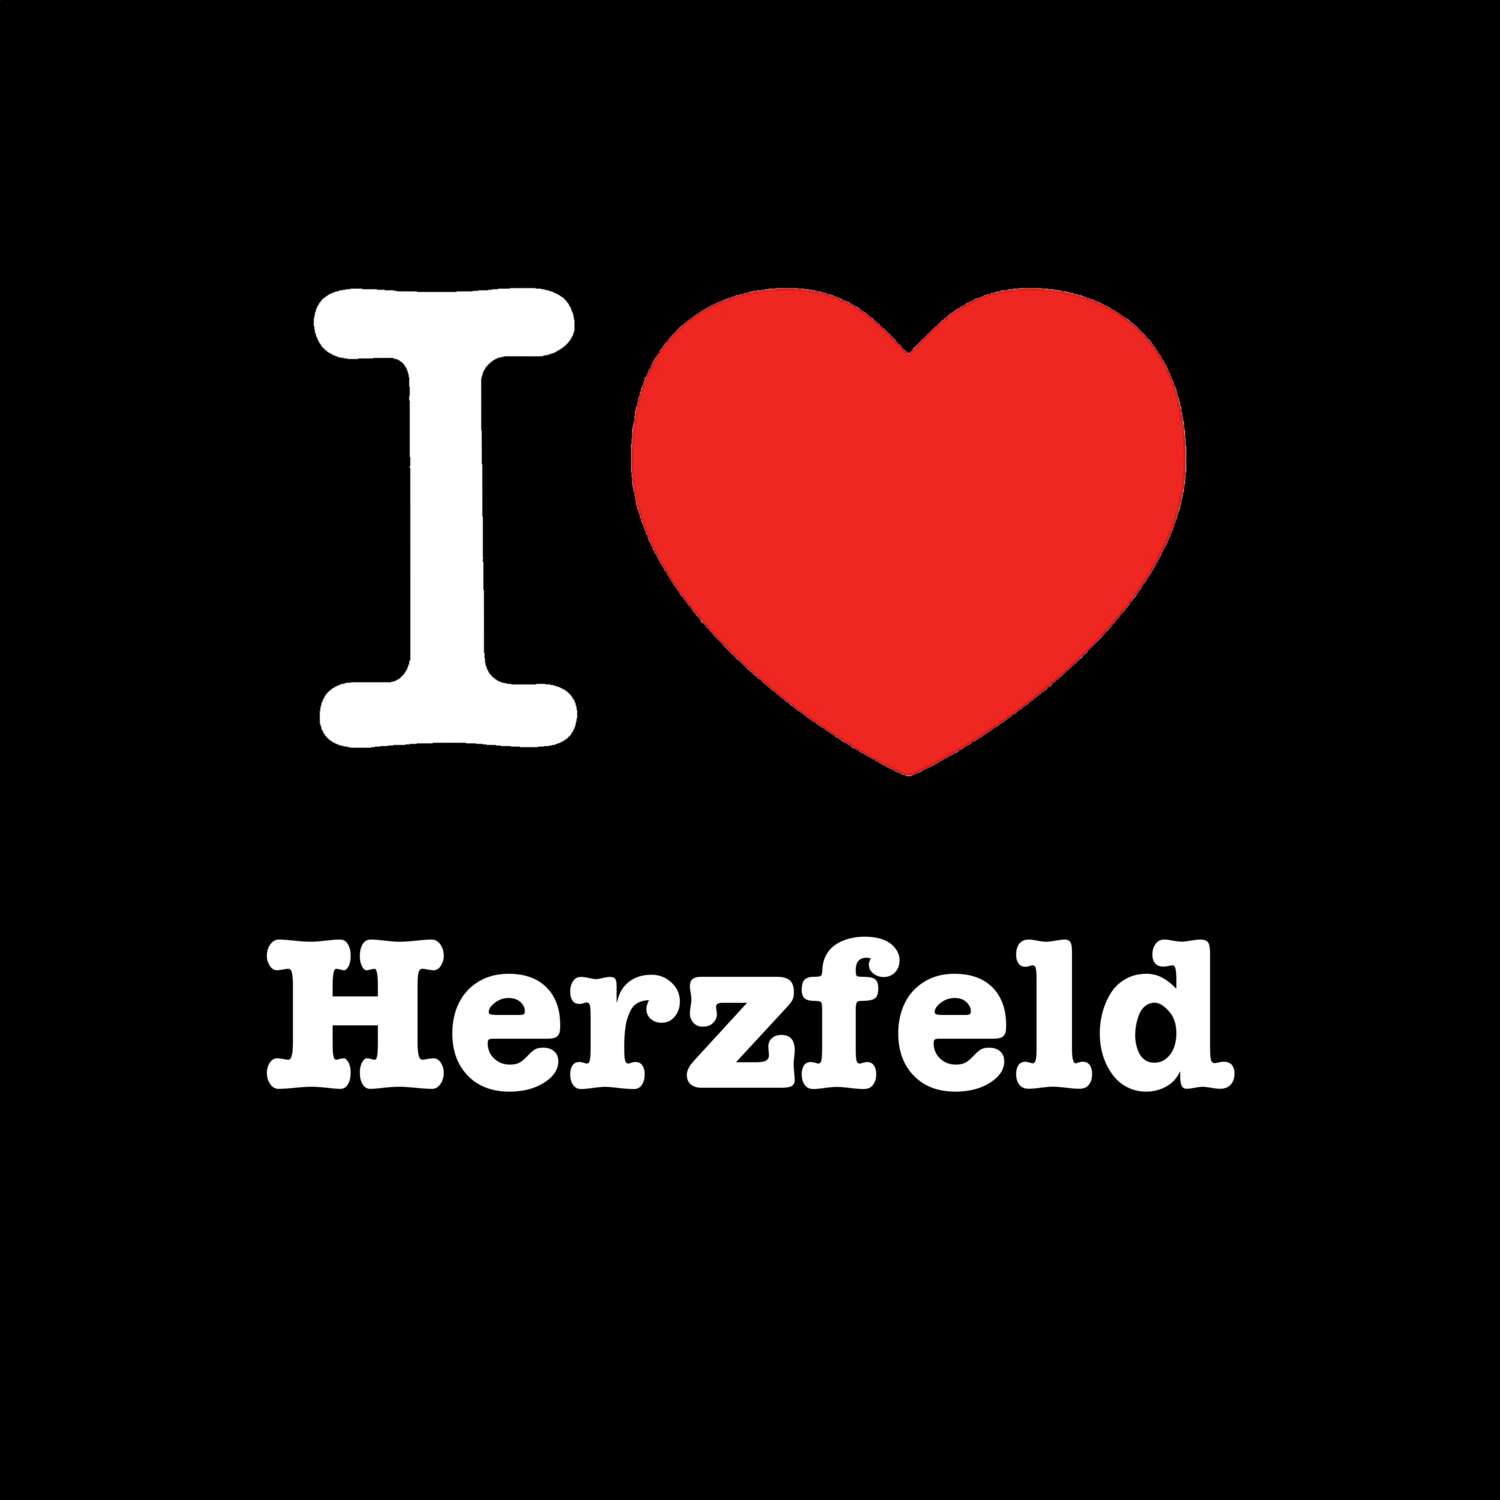 Herzfeld T-Shirt »I love«